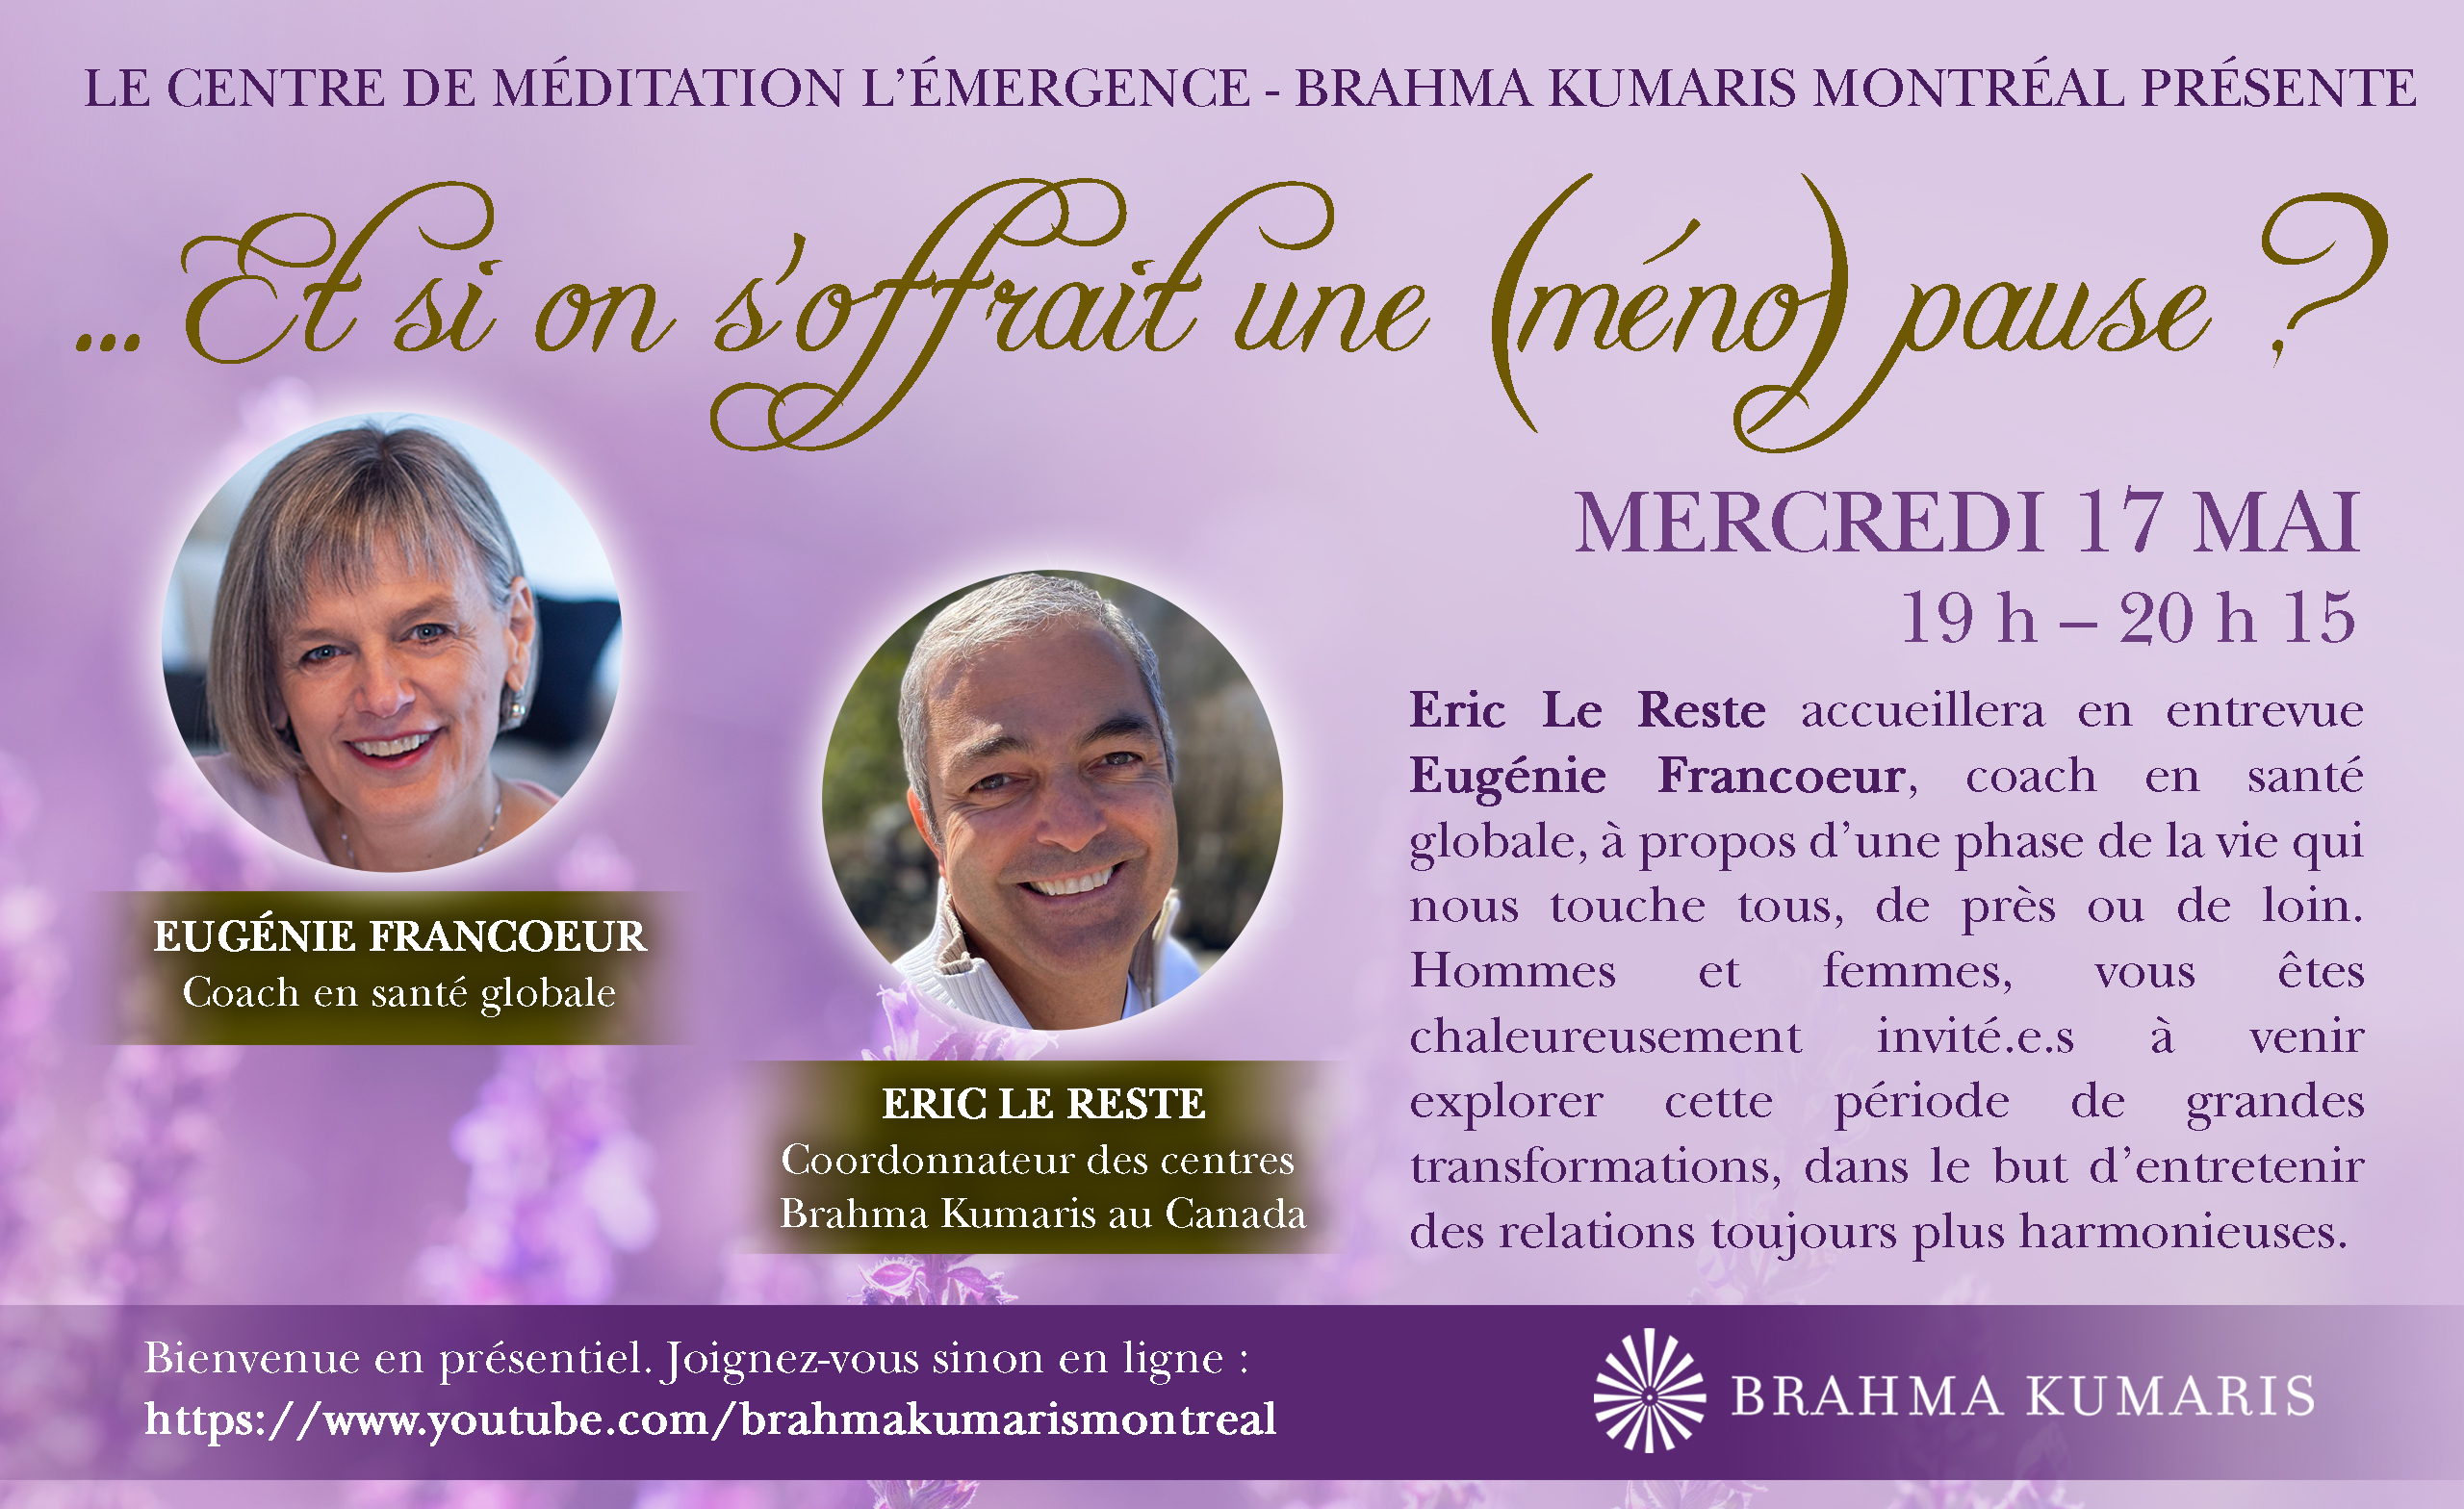 Le centre de méditation L’Émergence - Brahma Kumaris Montréal présente ... et si on s'offrait une (méno) pause? Eric Le Reste accueillera en entrevue Eugénie Francoeur